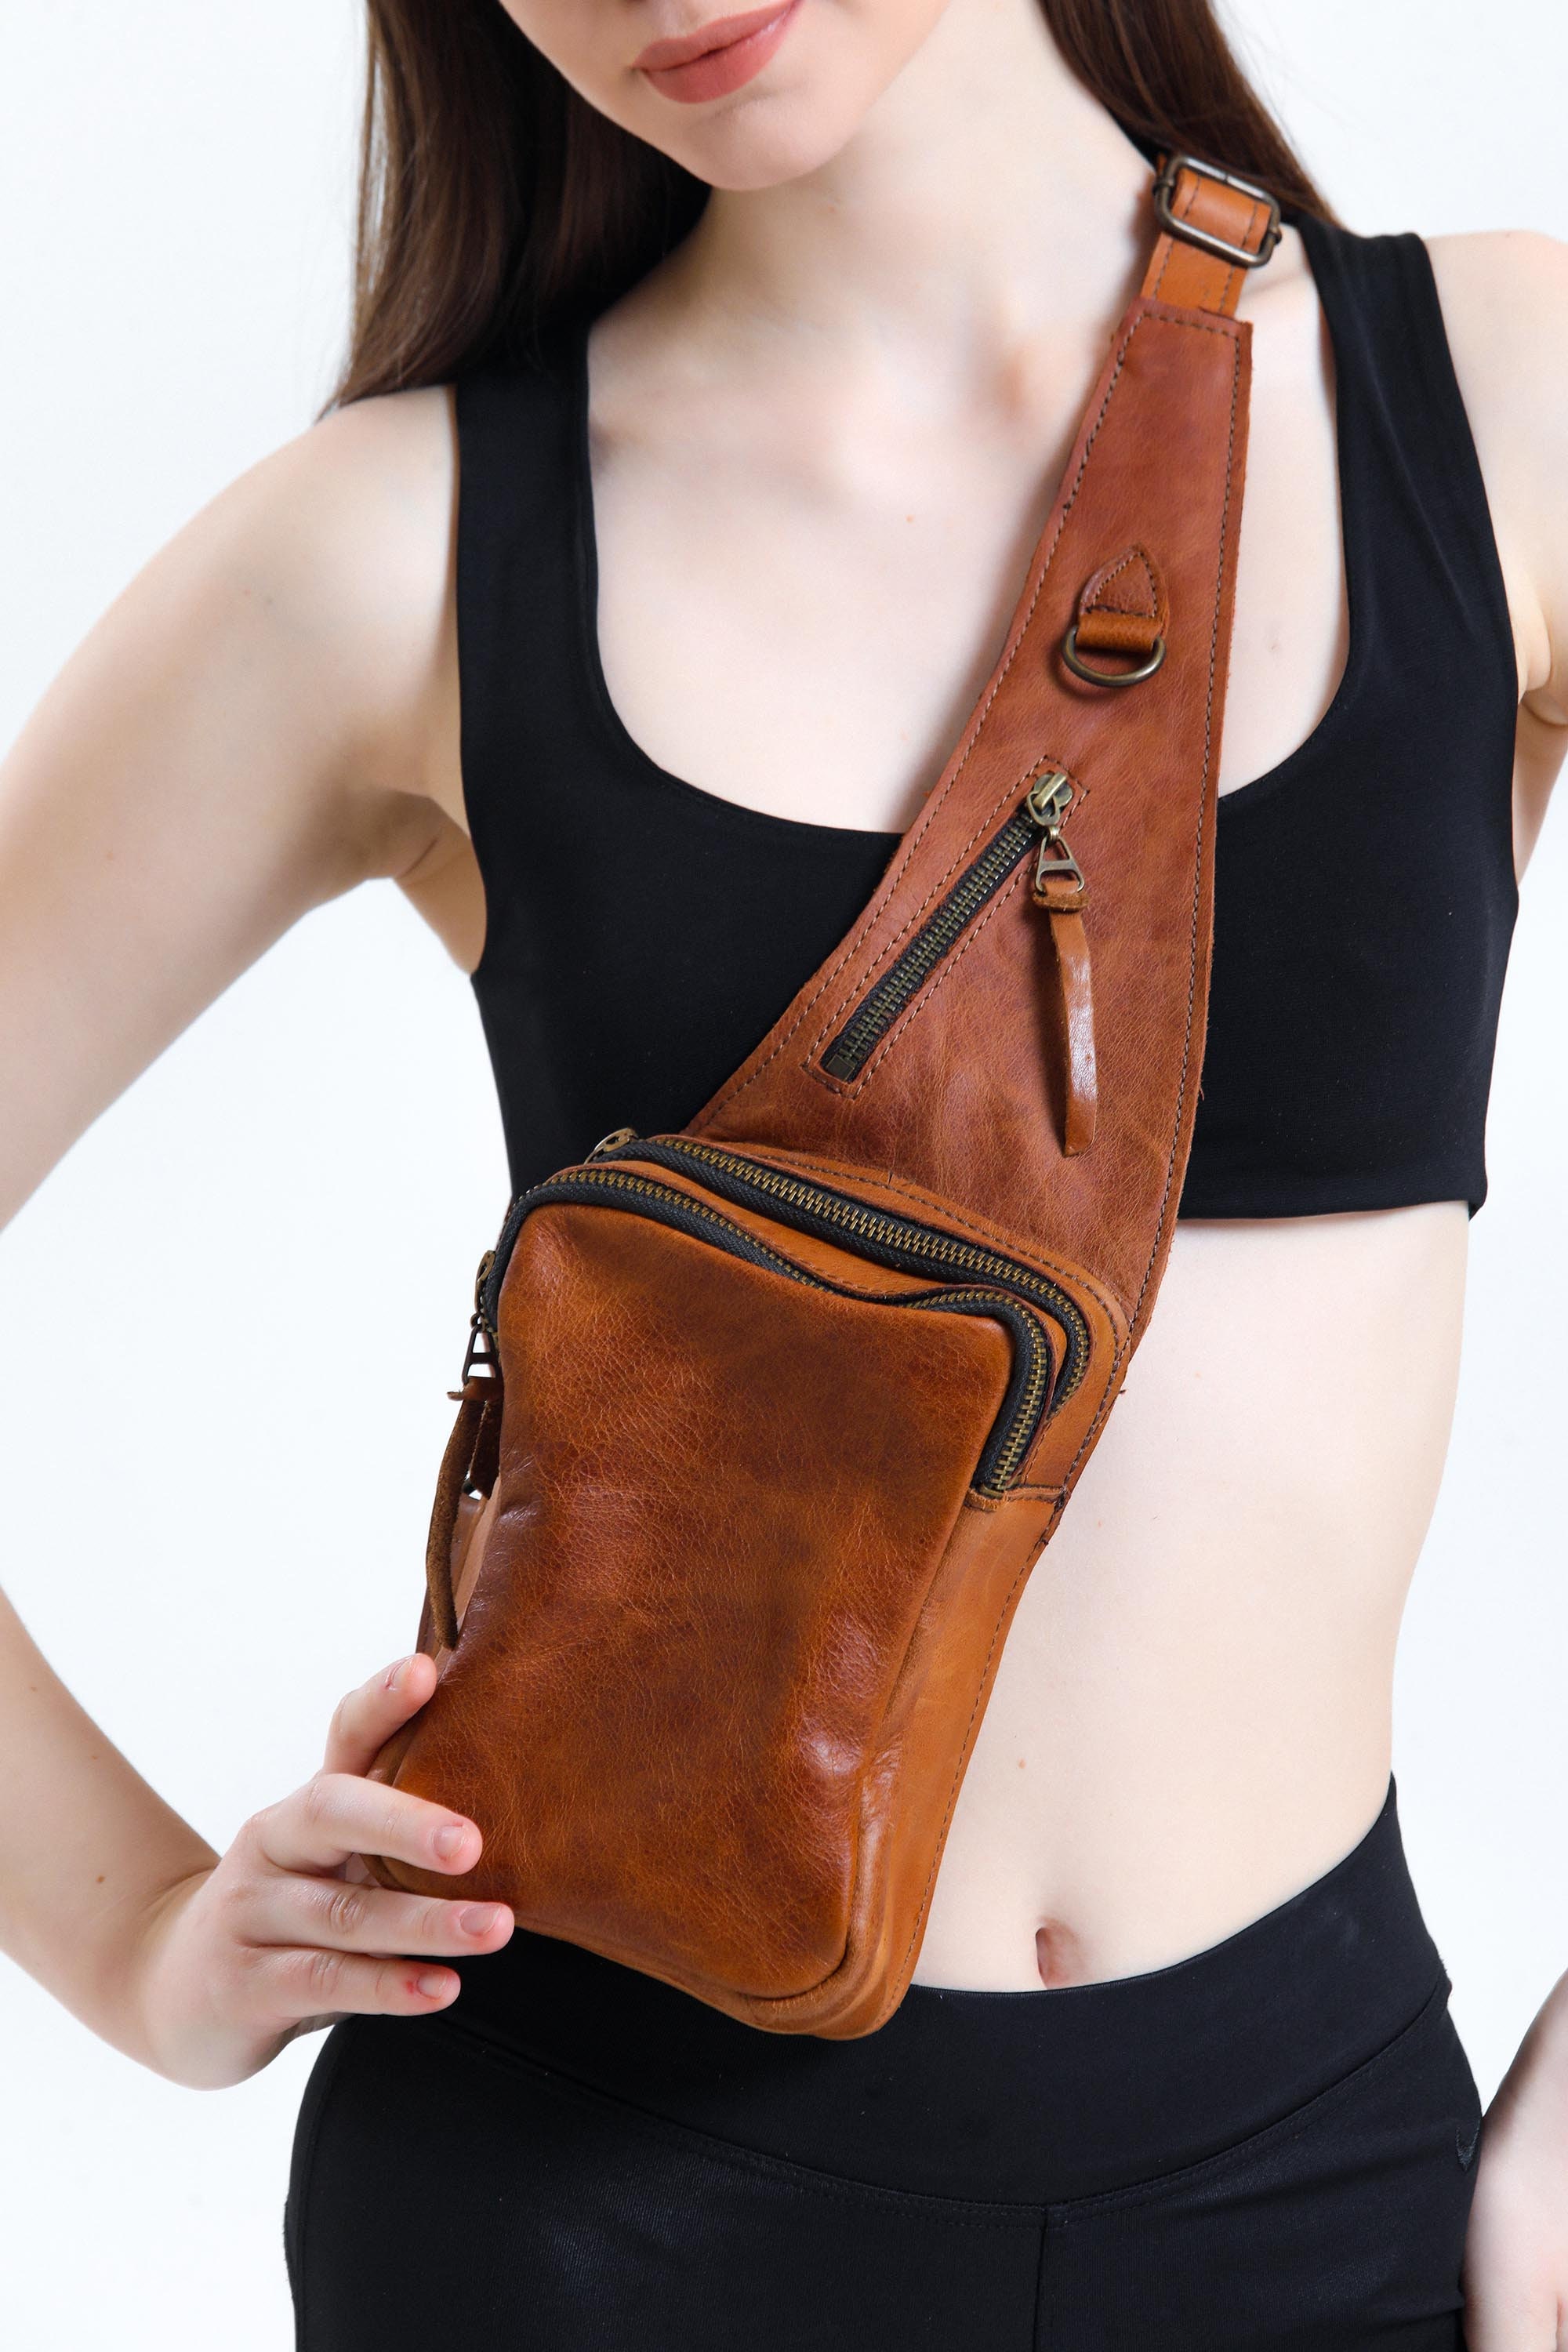 Crossbody Shoulder Bag Chest Bag Harness Bag Travel Backpack 